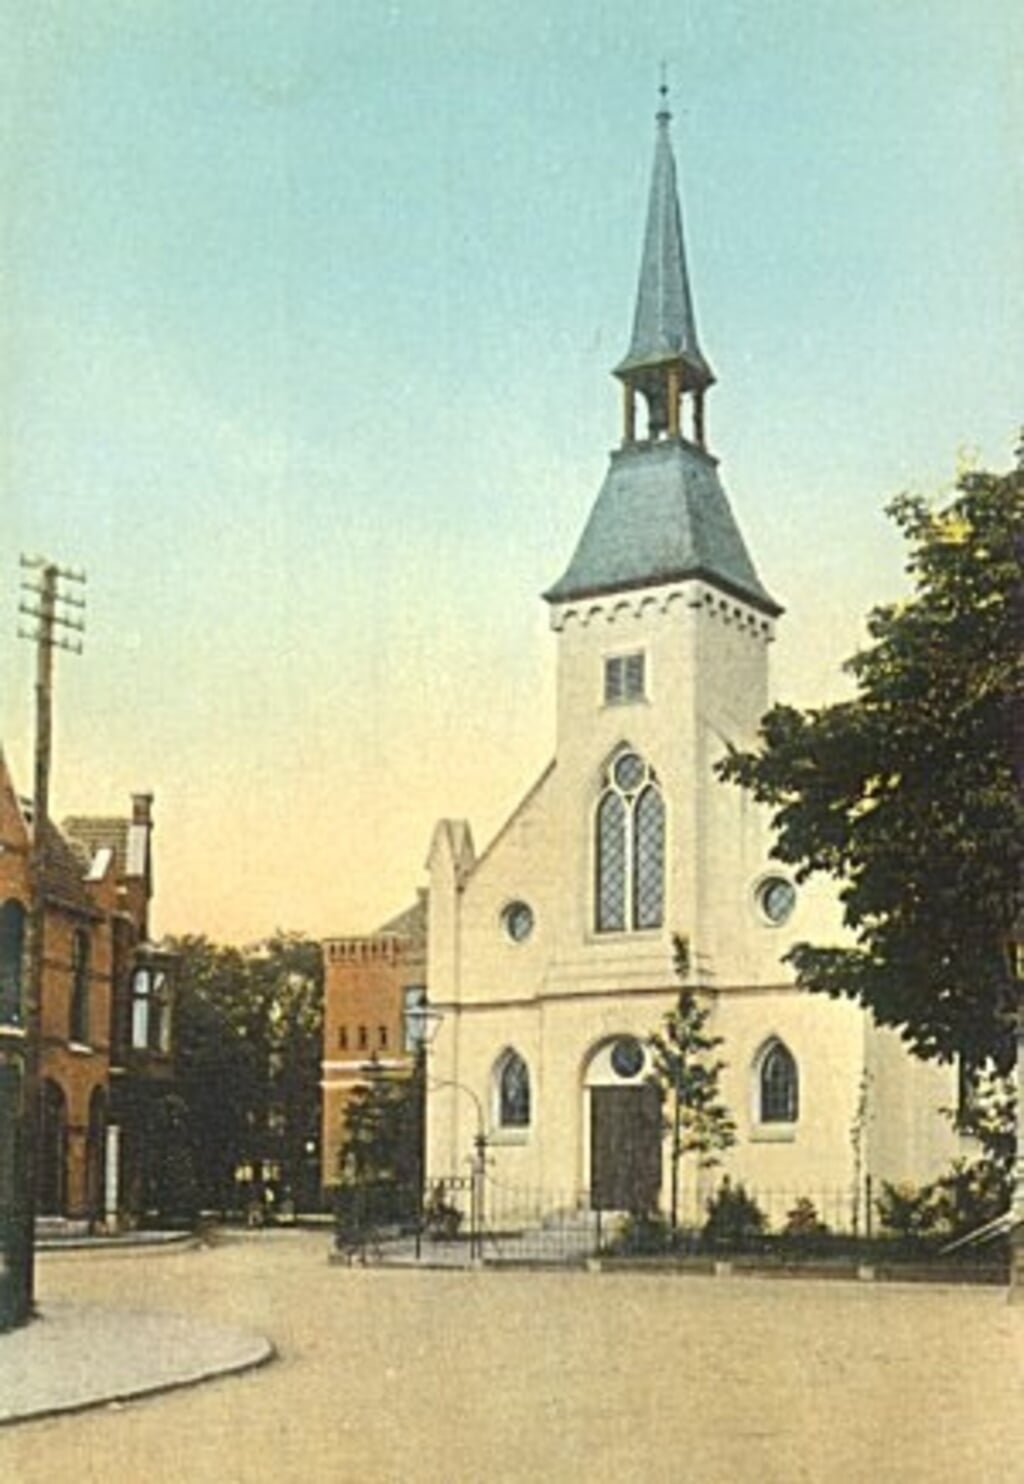 Het Nederlands Hervormd kerkje zoals het er in 1882 uitzag